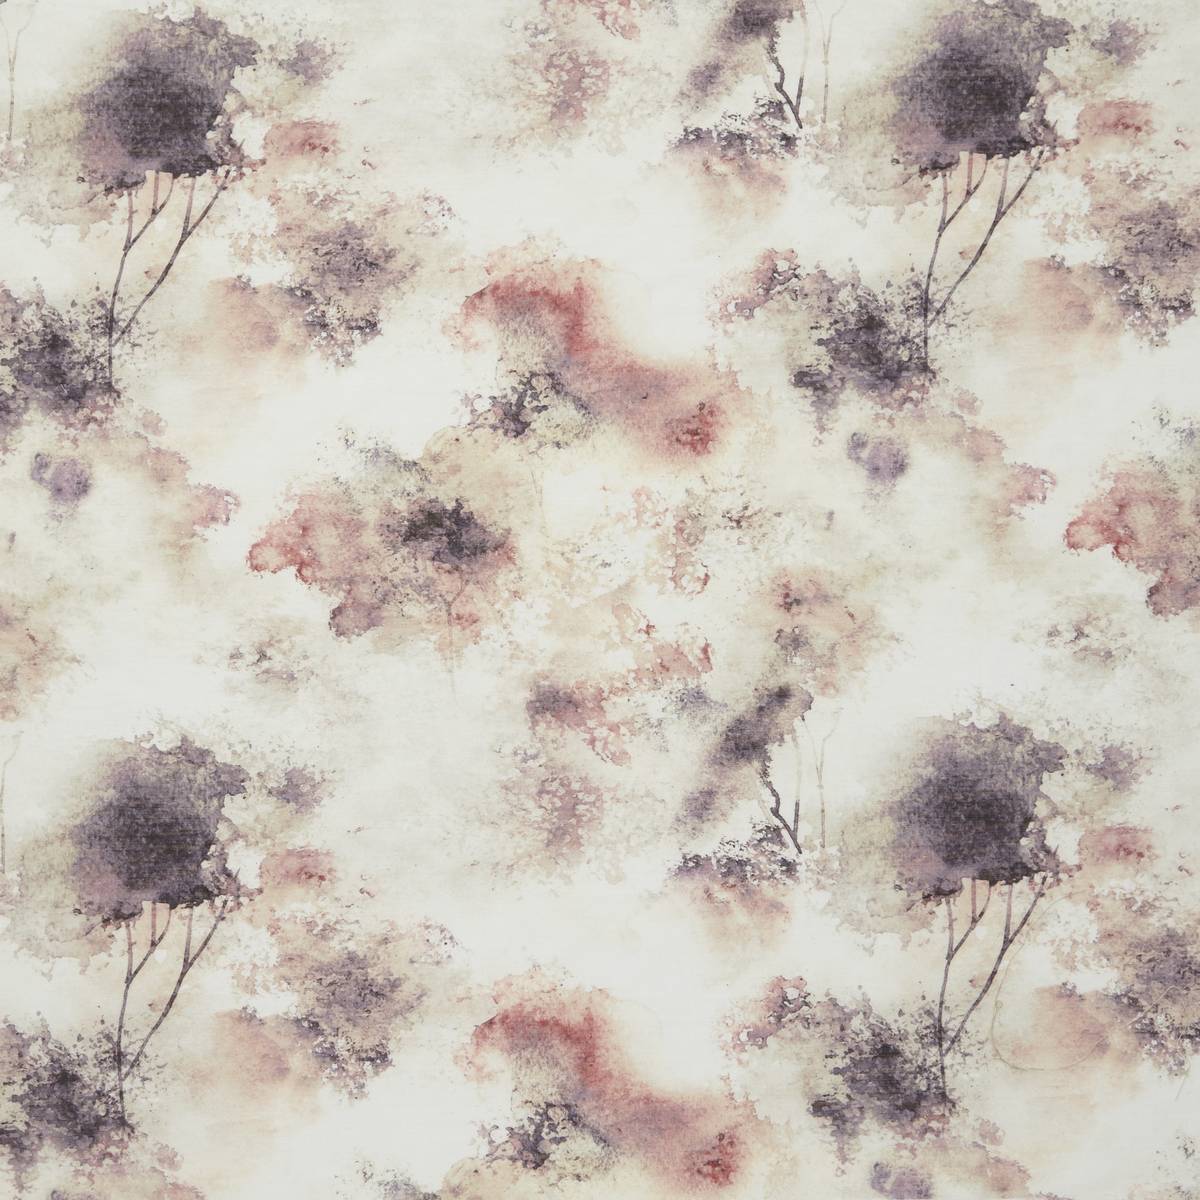 Caldera Mulberry Fabric by iLiv